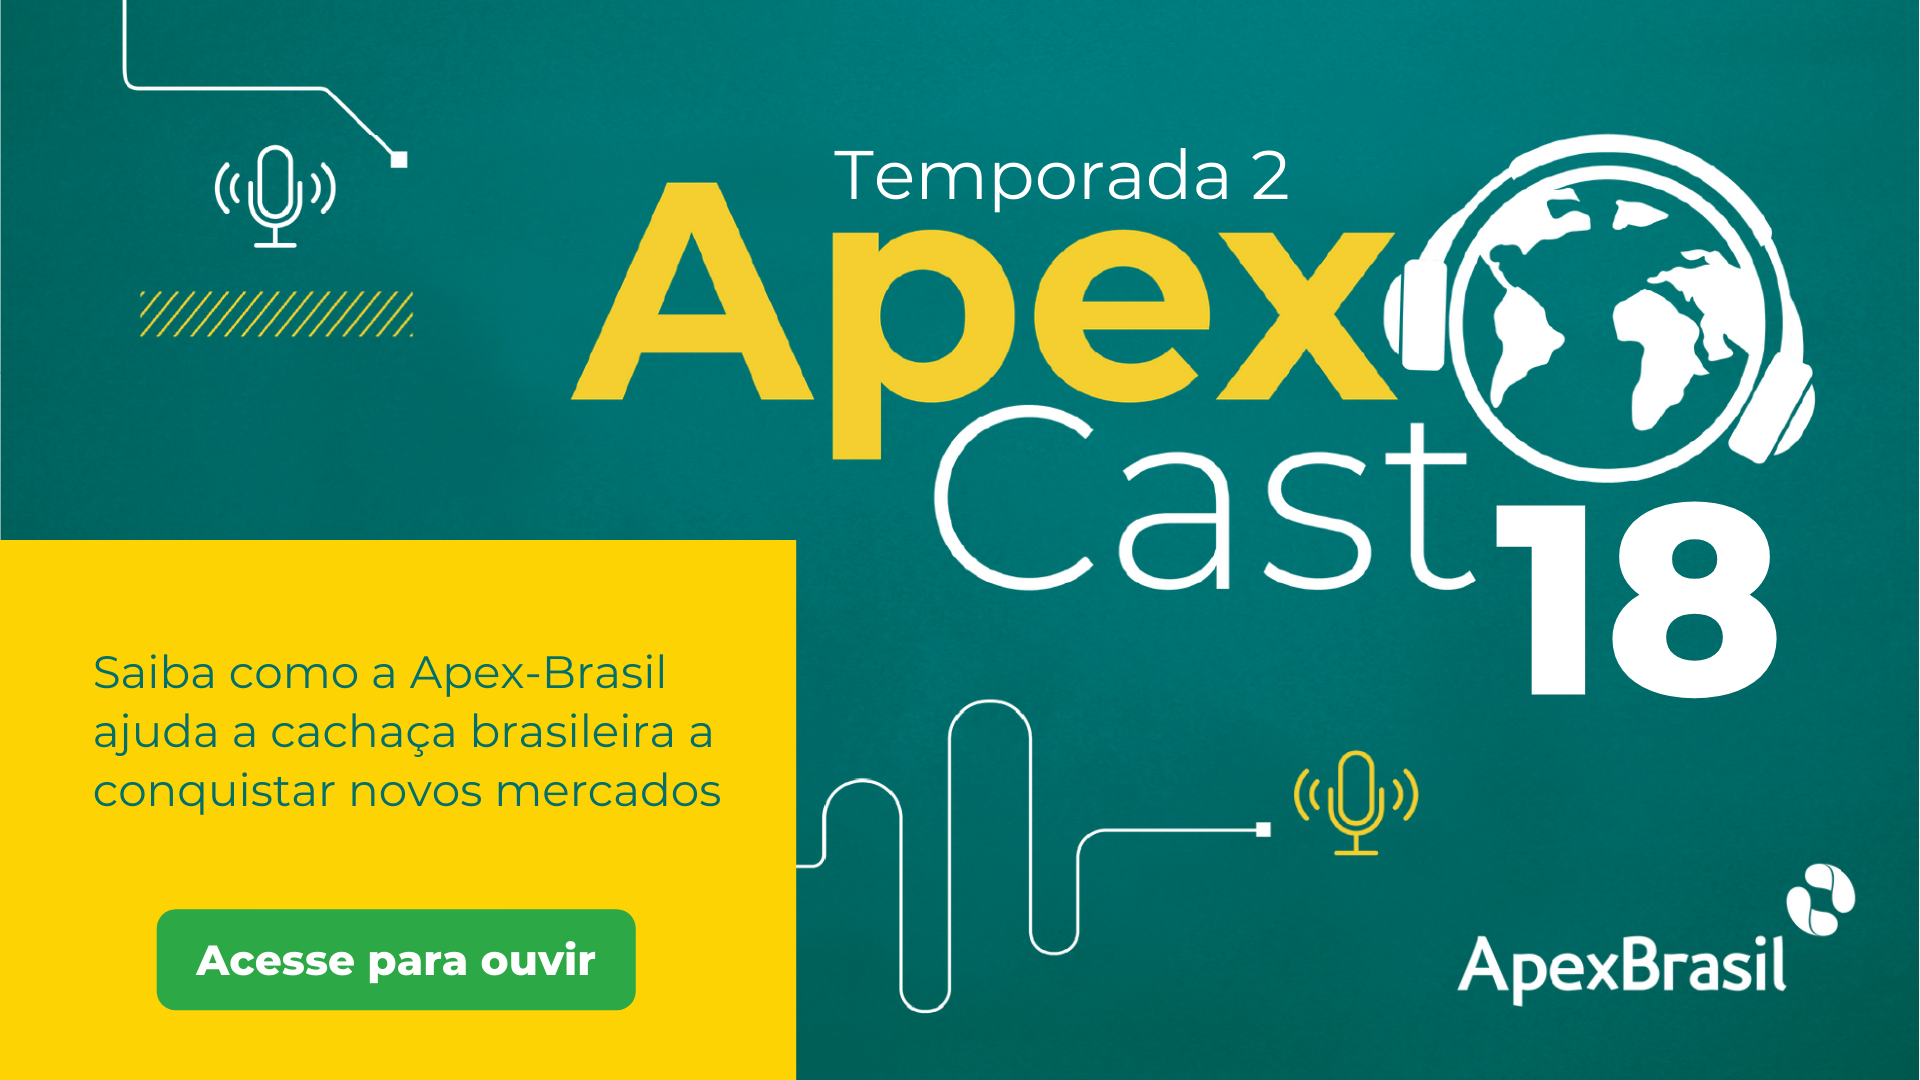 ApexCast apresenta oportunidades internacionais para a cachaça brasileira